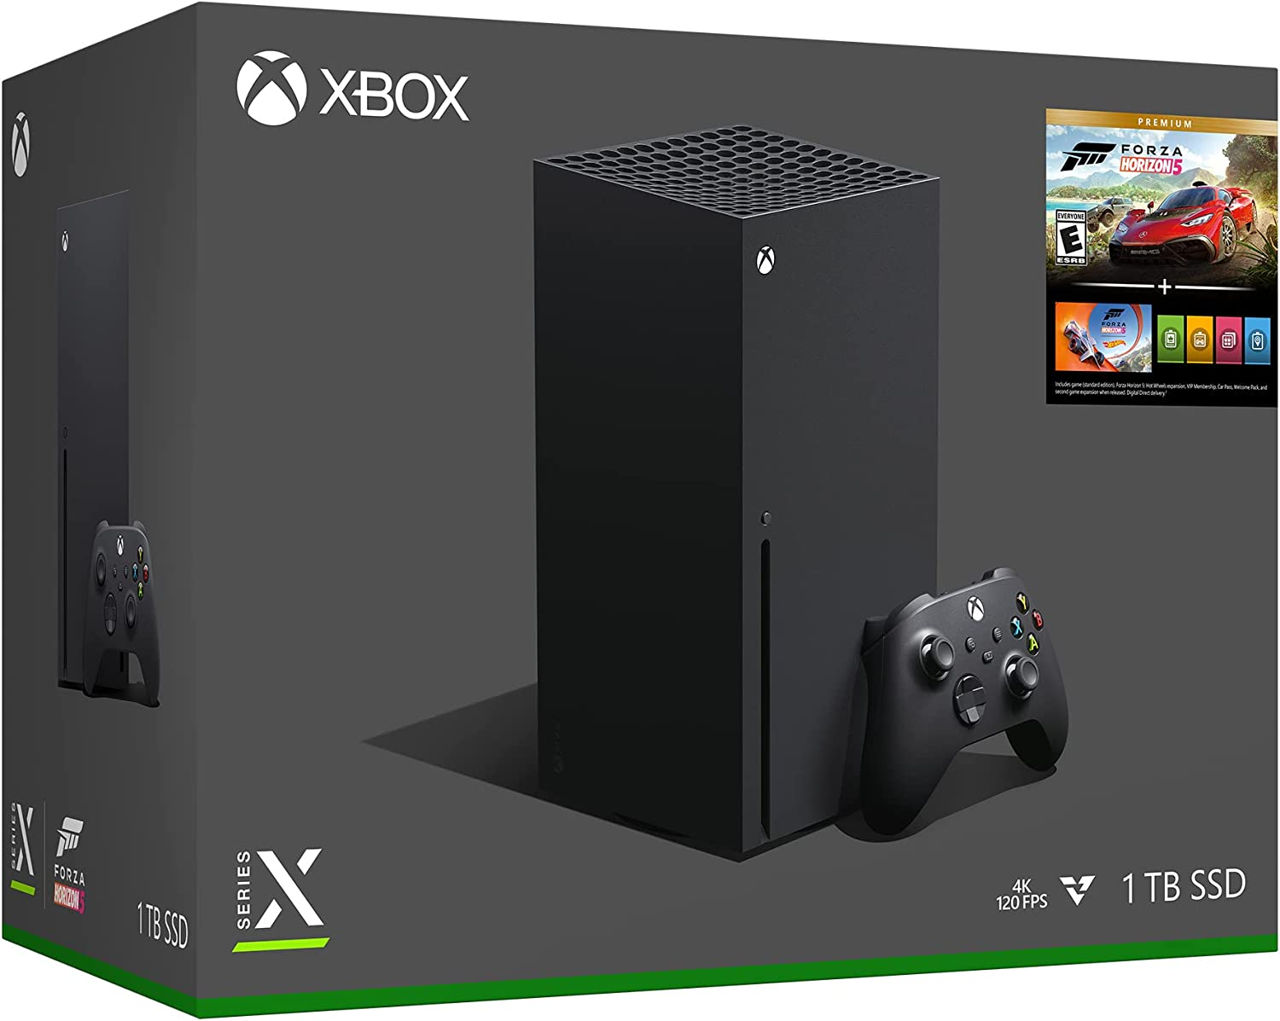 Xbox Series X with Forza Horizon 5 Premium foto 1